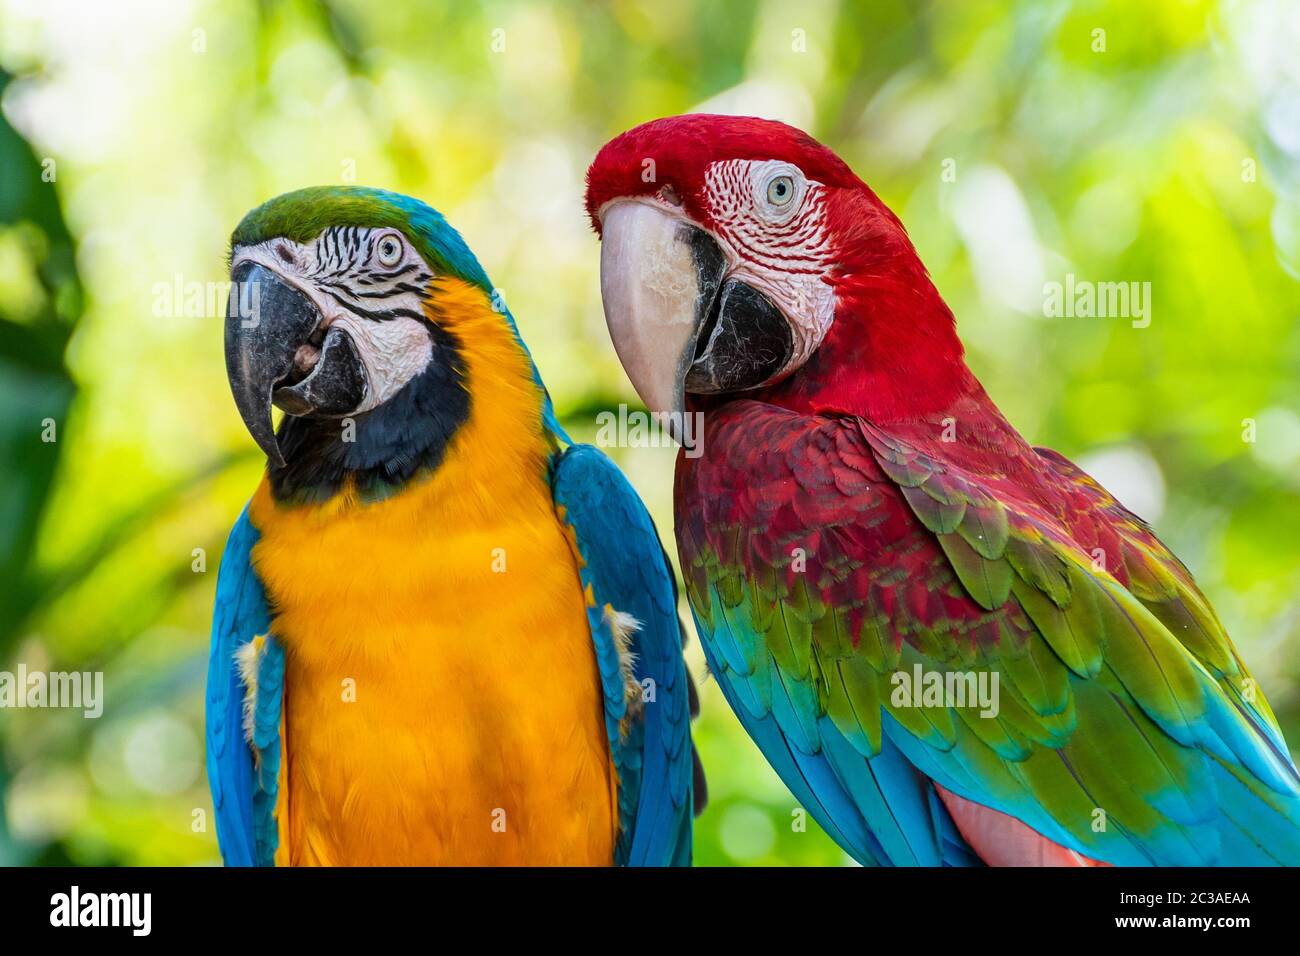 Nahaufnahme Gesicht von Ara bunte Vögel Stockfoto